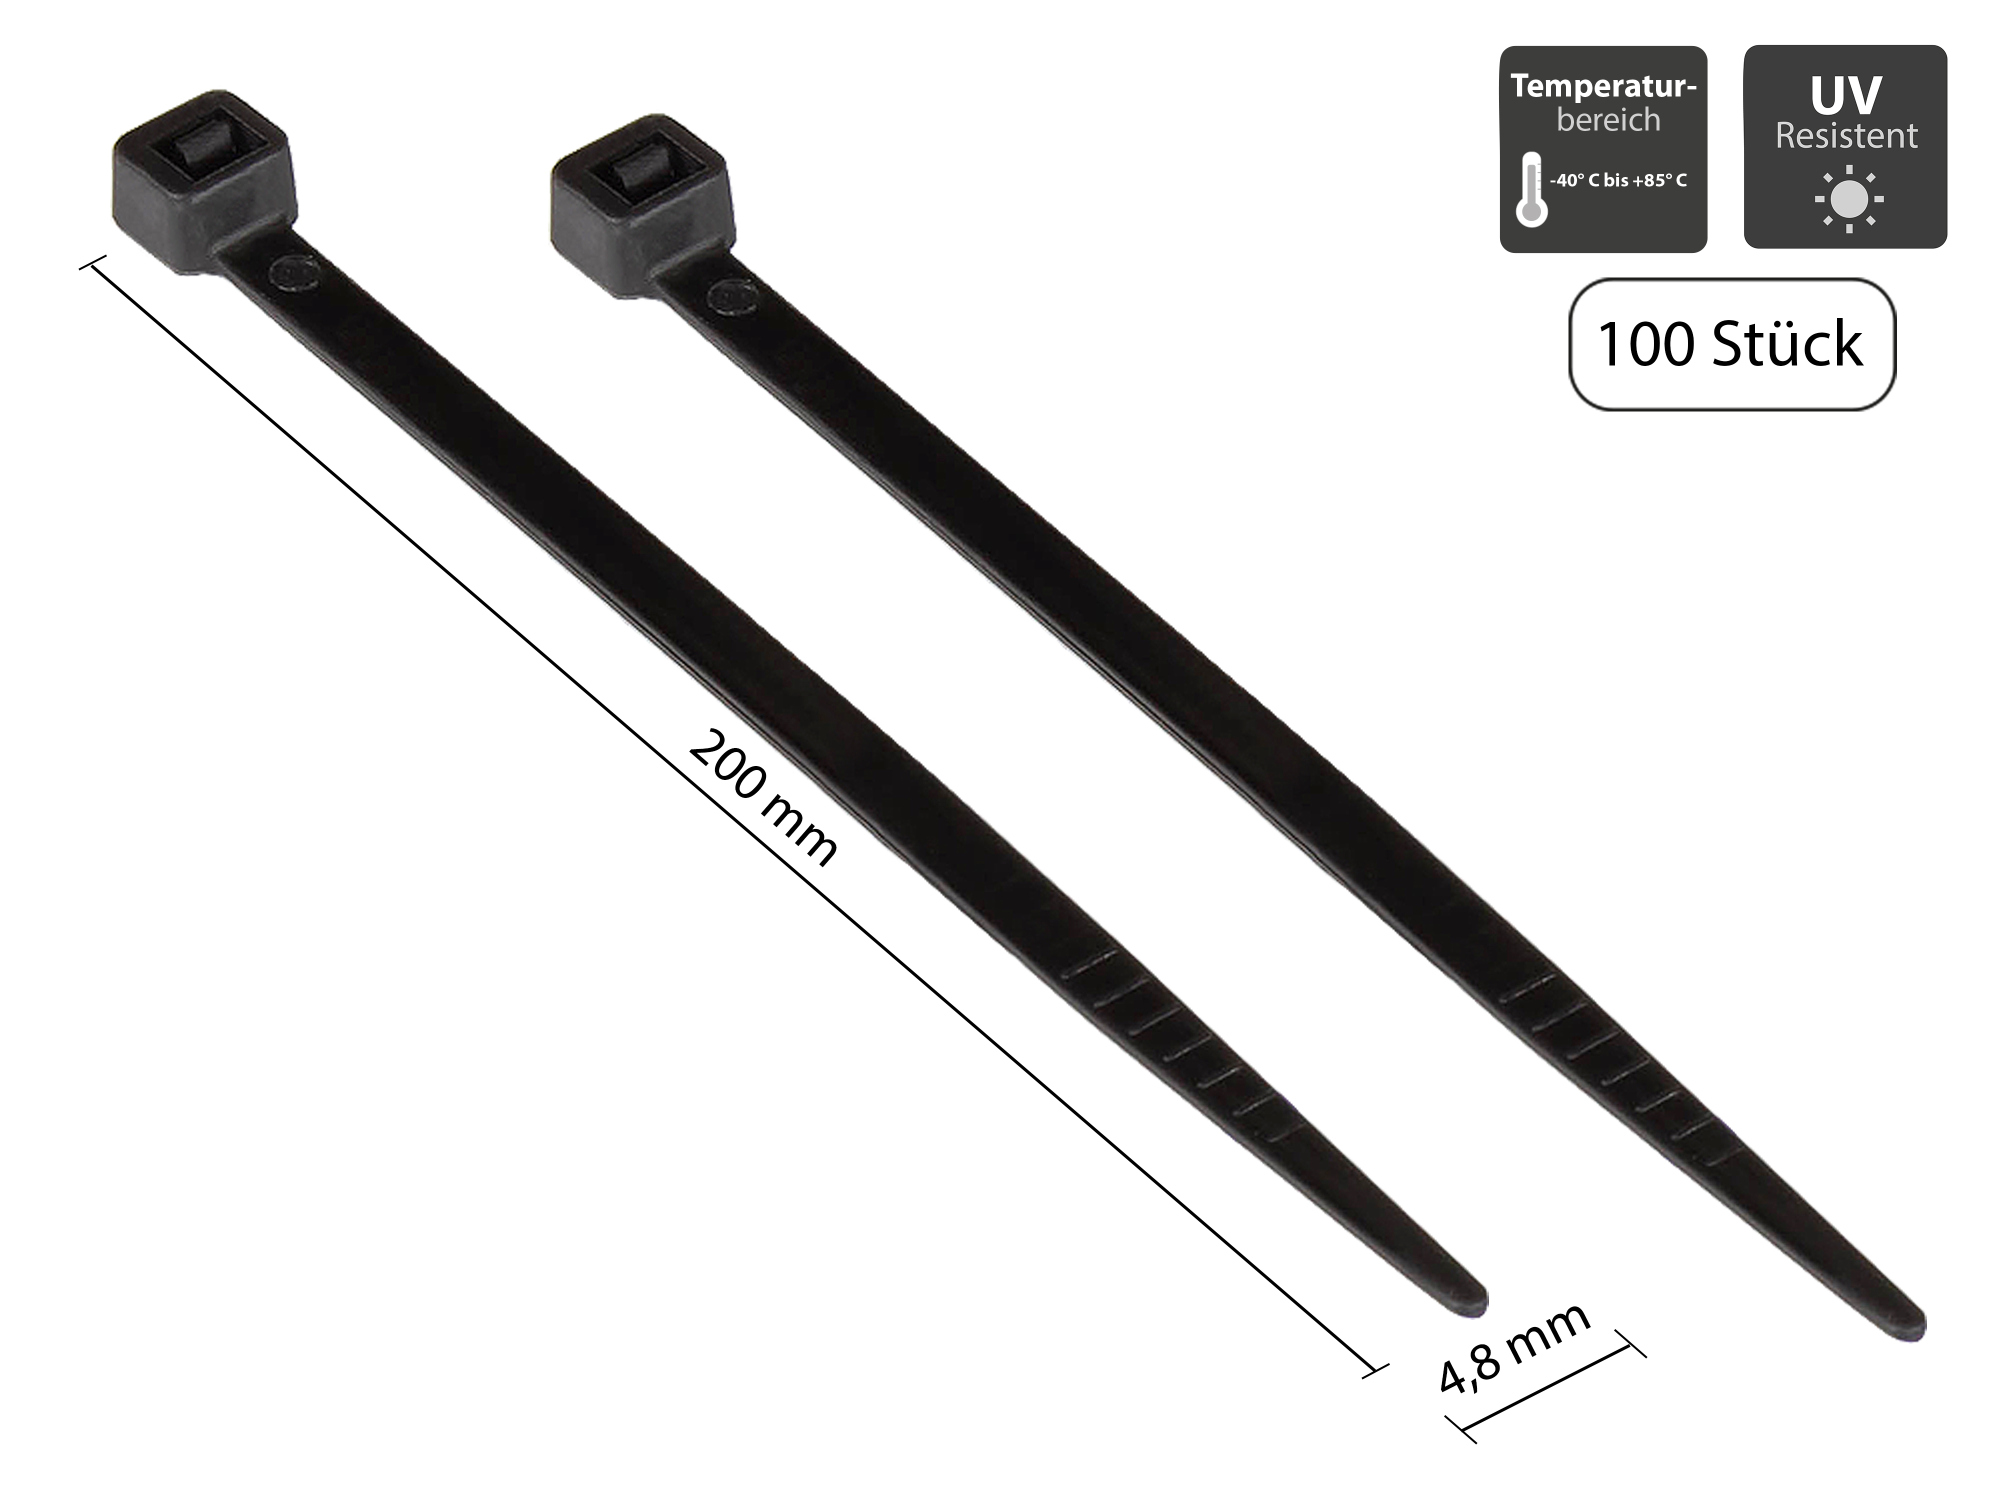 Kabelbinder 200 mm x 4,8 mm, schwarz, UL, UV-resistent, -40 °C bis +85 °C, 100 Stück